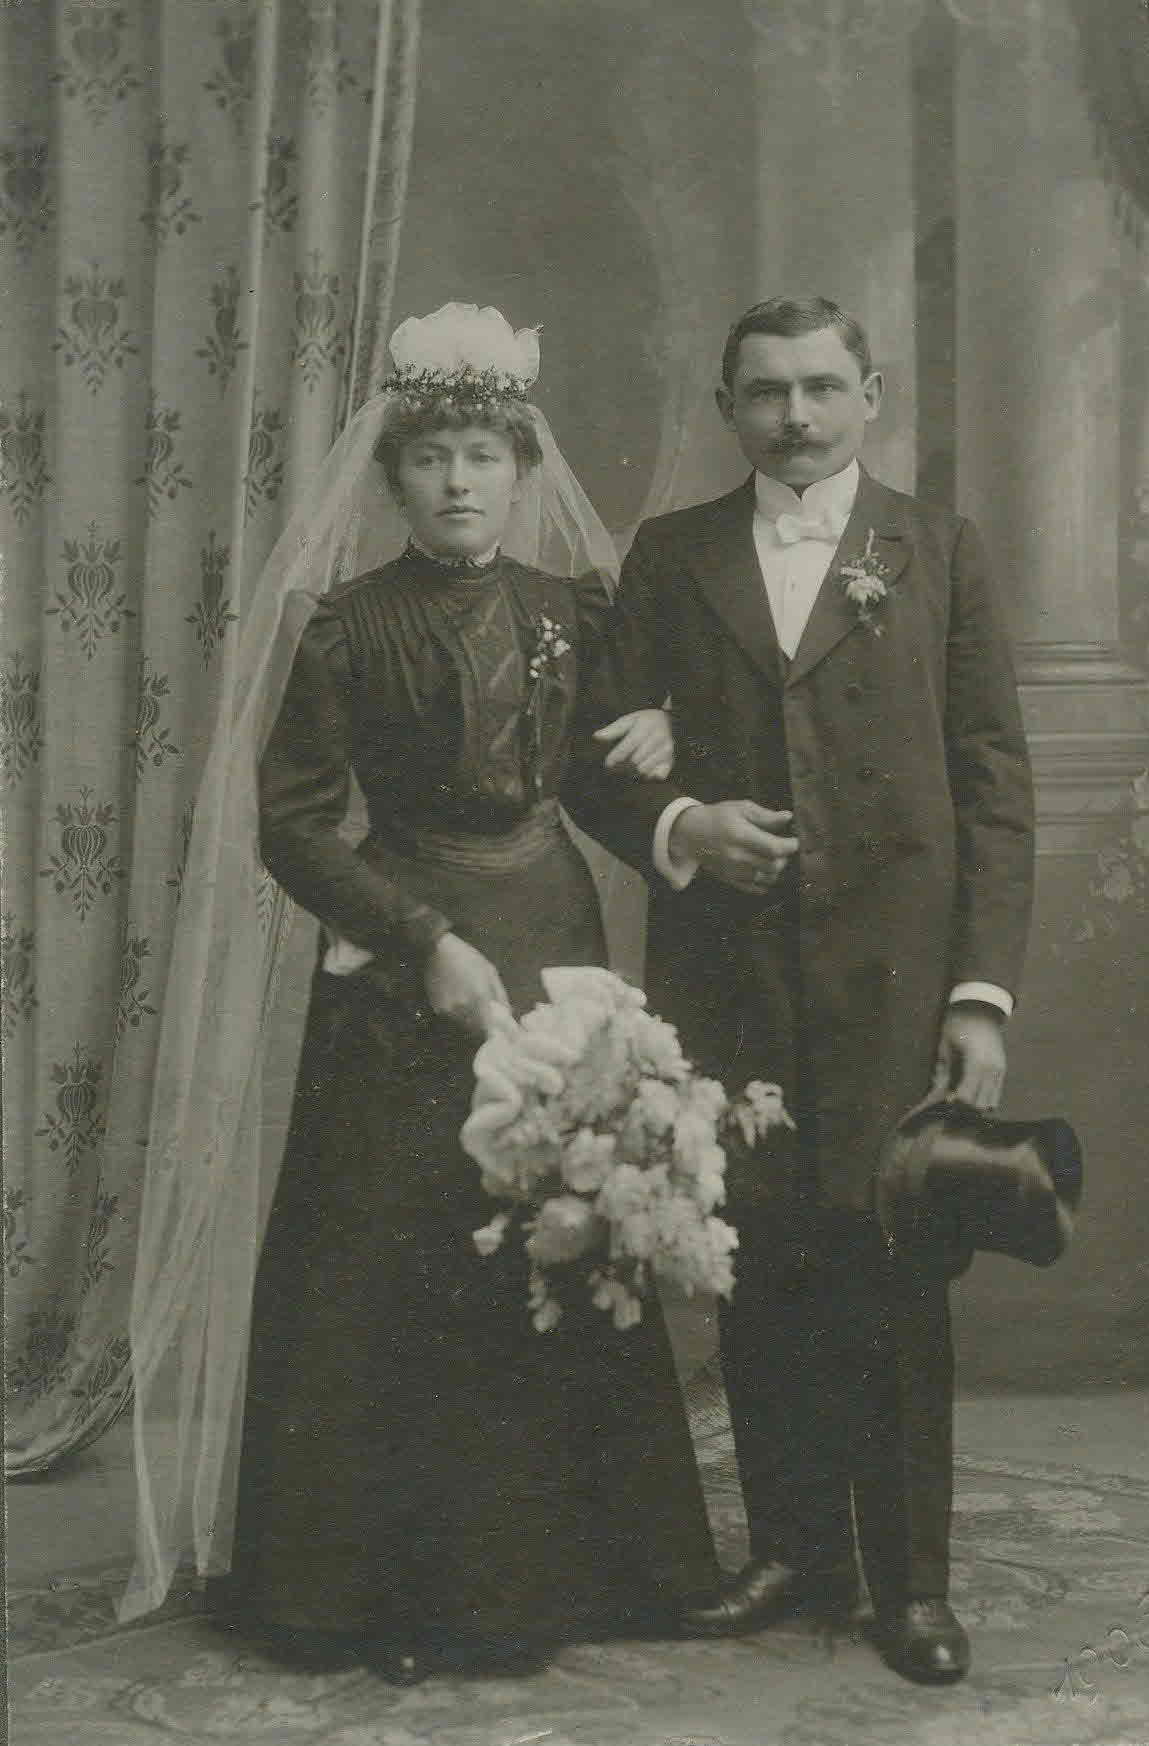 Hochzeitsbild von Walburga und Franz Josef Strauß 1906